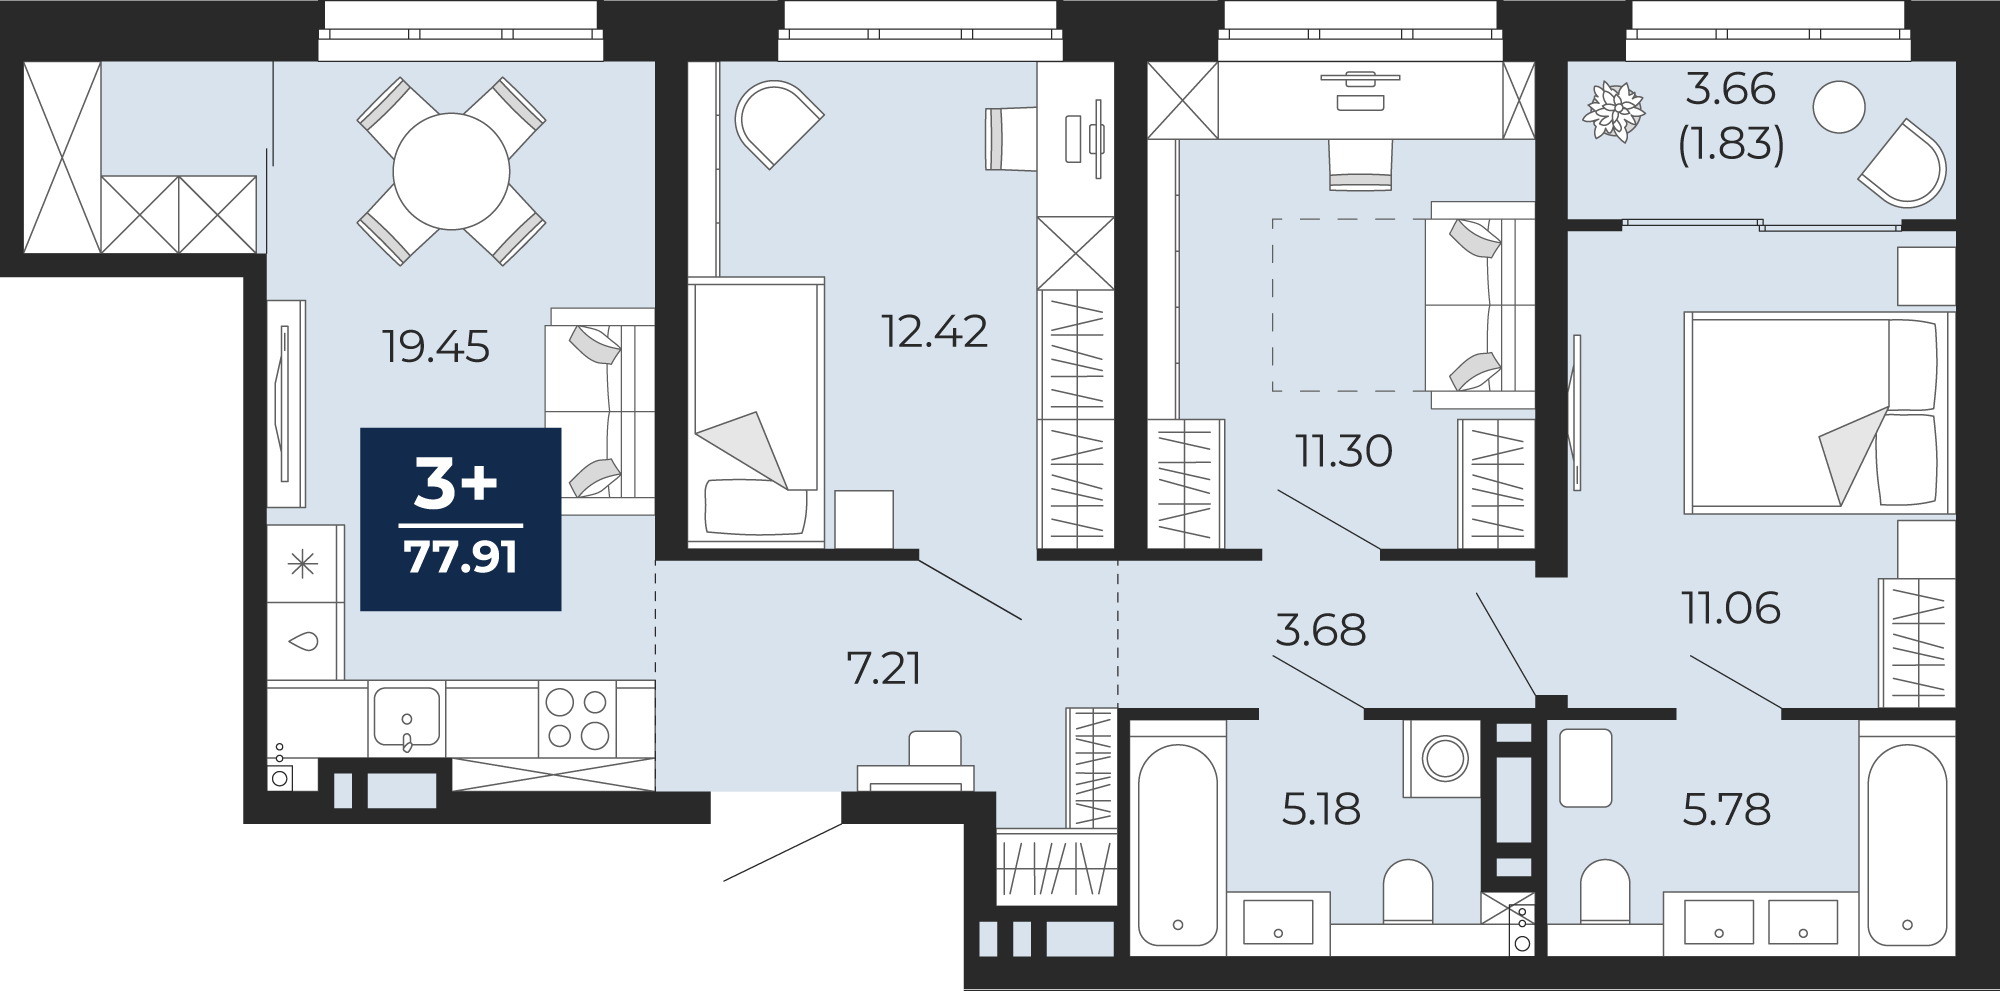 Квартира № 165, 3-комнатная, 77.91 кв. м, 4 этаж